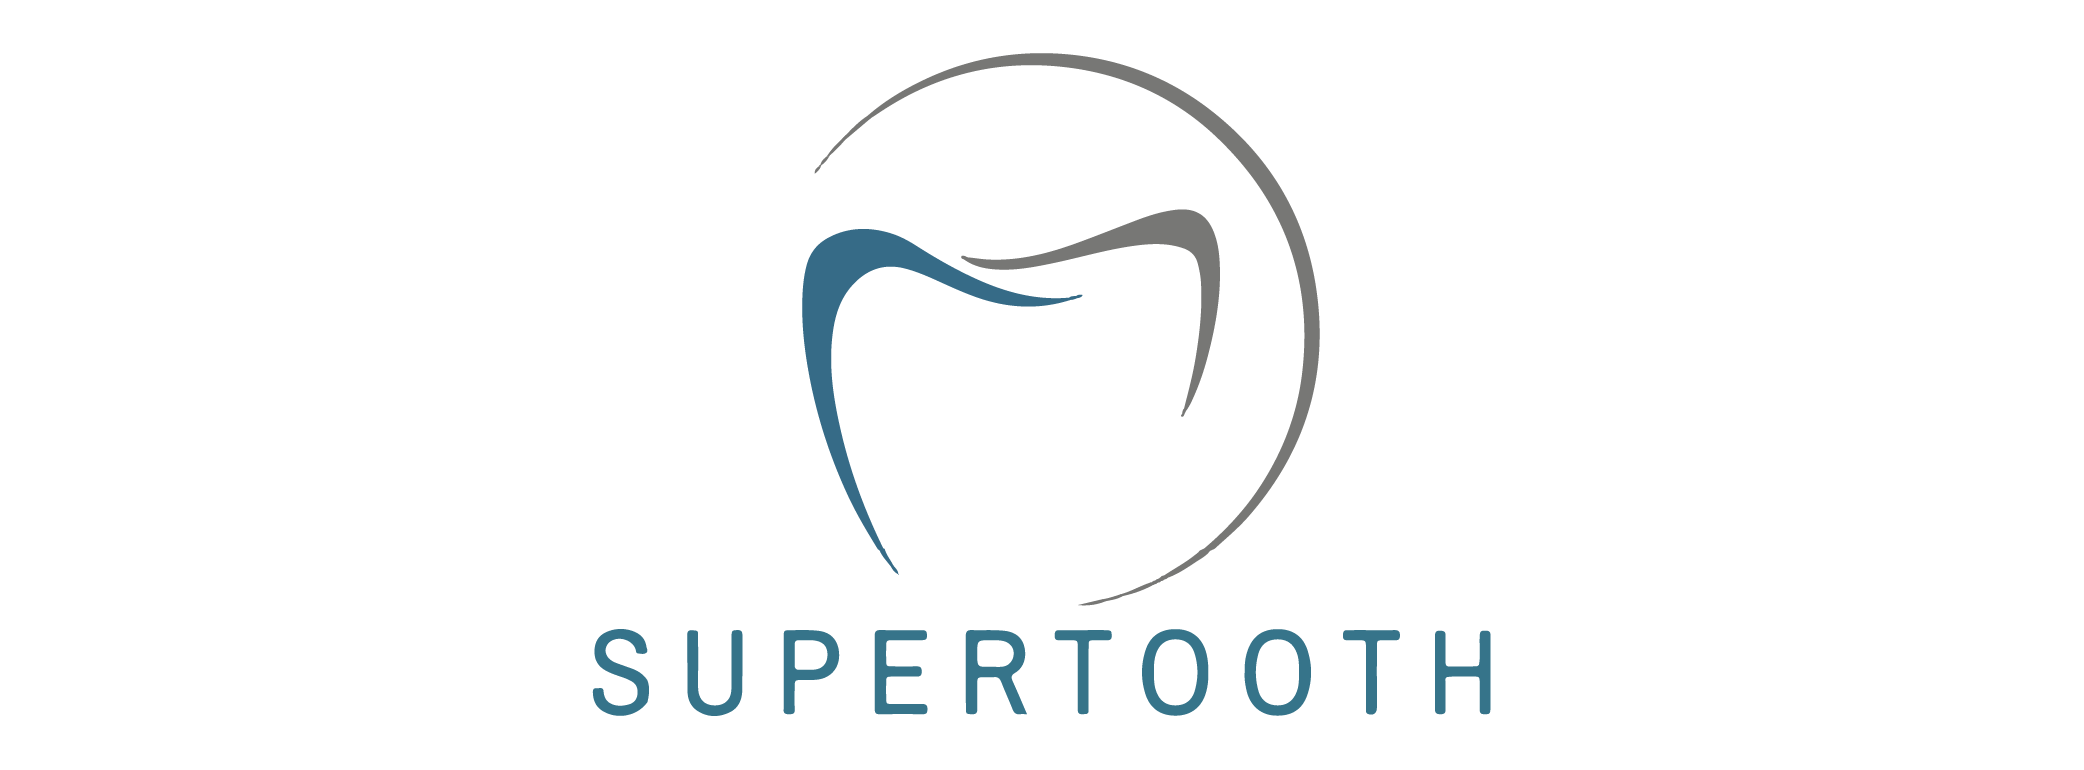 Supertooth_Logo_LOGO-1